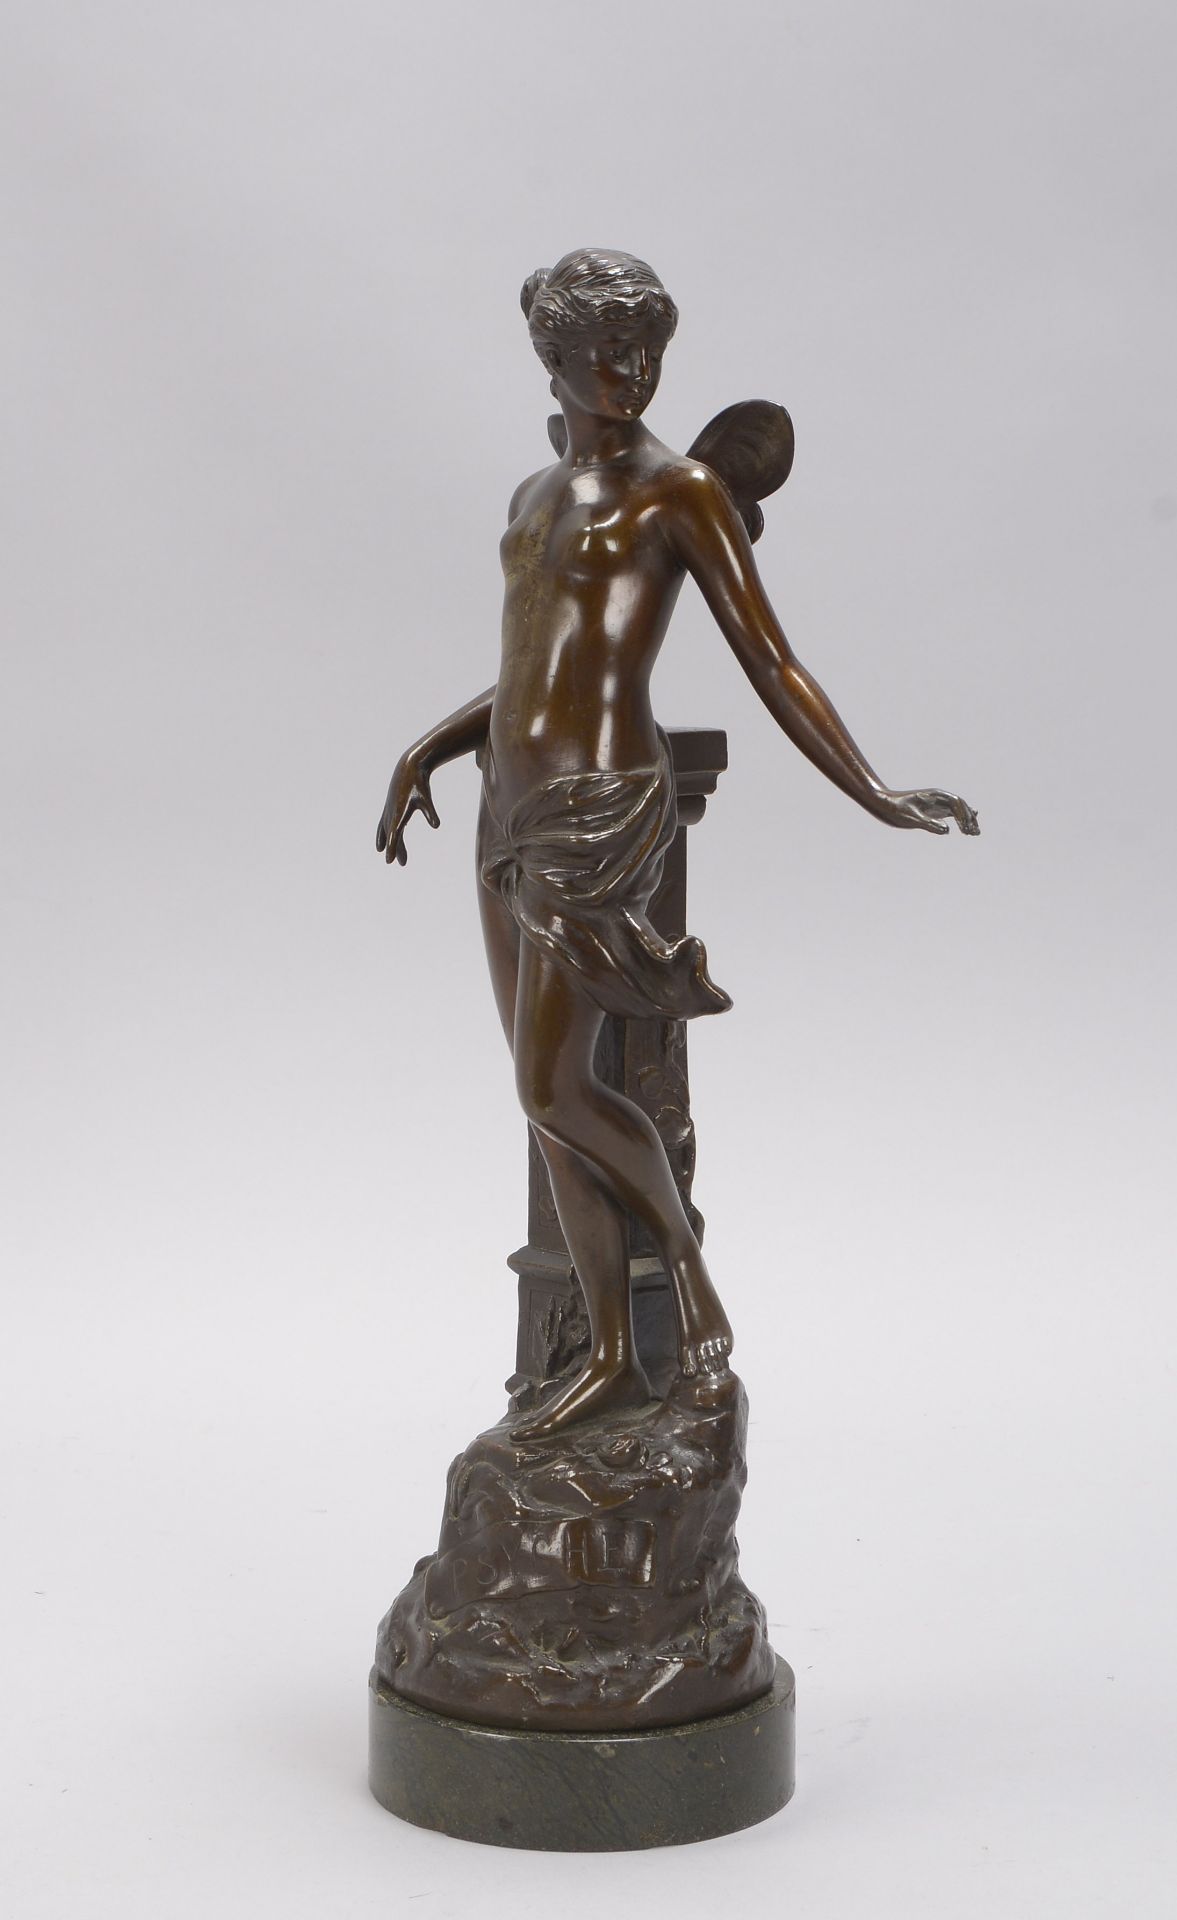 Skulptur, 'Psyche', Figur mit bronzierter Metallummantelung, signiert 'A. Mayer', auf Marmorsockel;  - Bild 2 aus 2